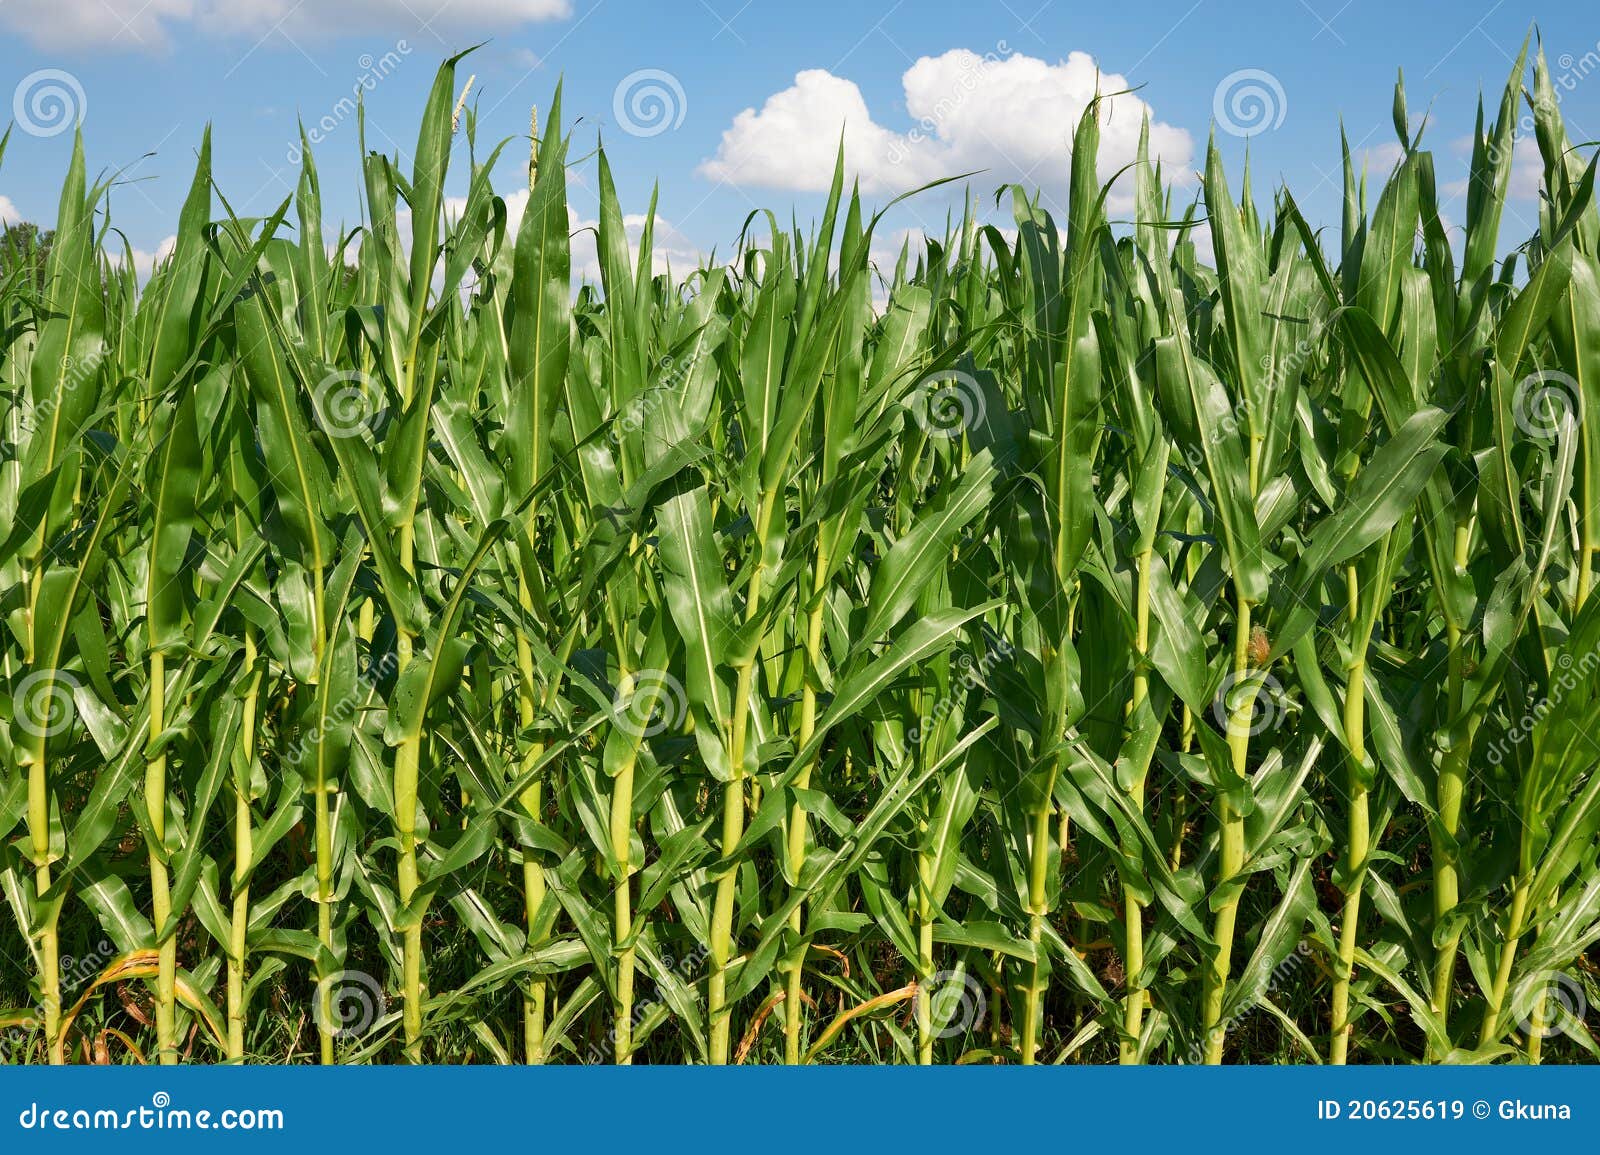 fodder corn